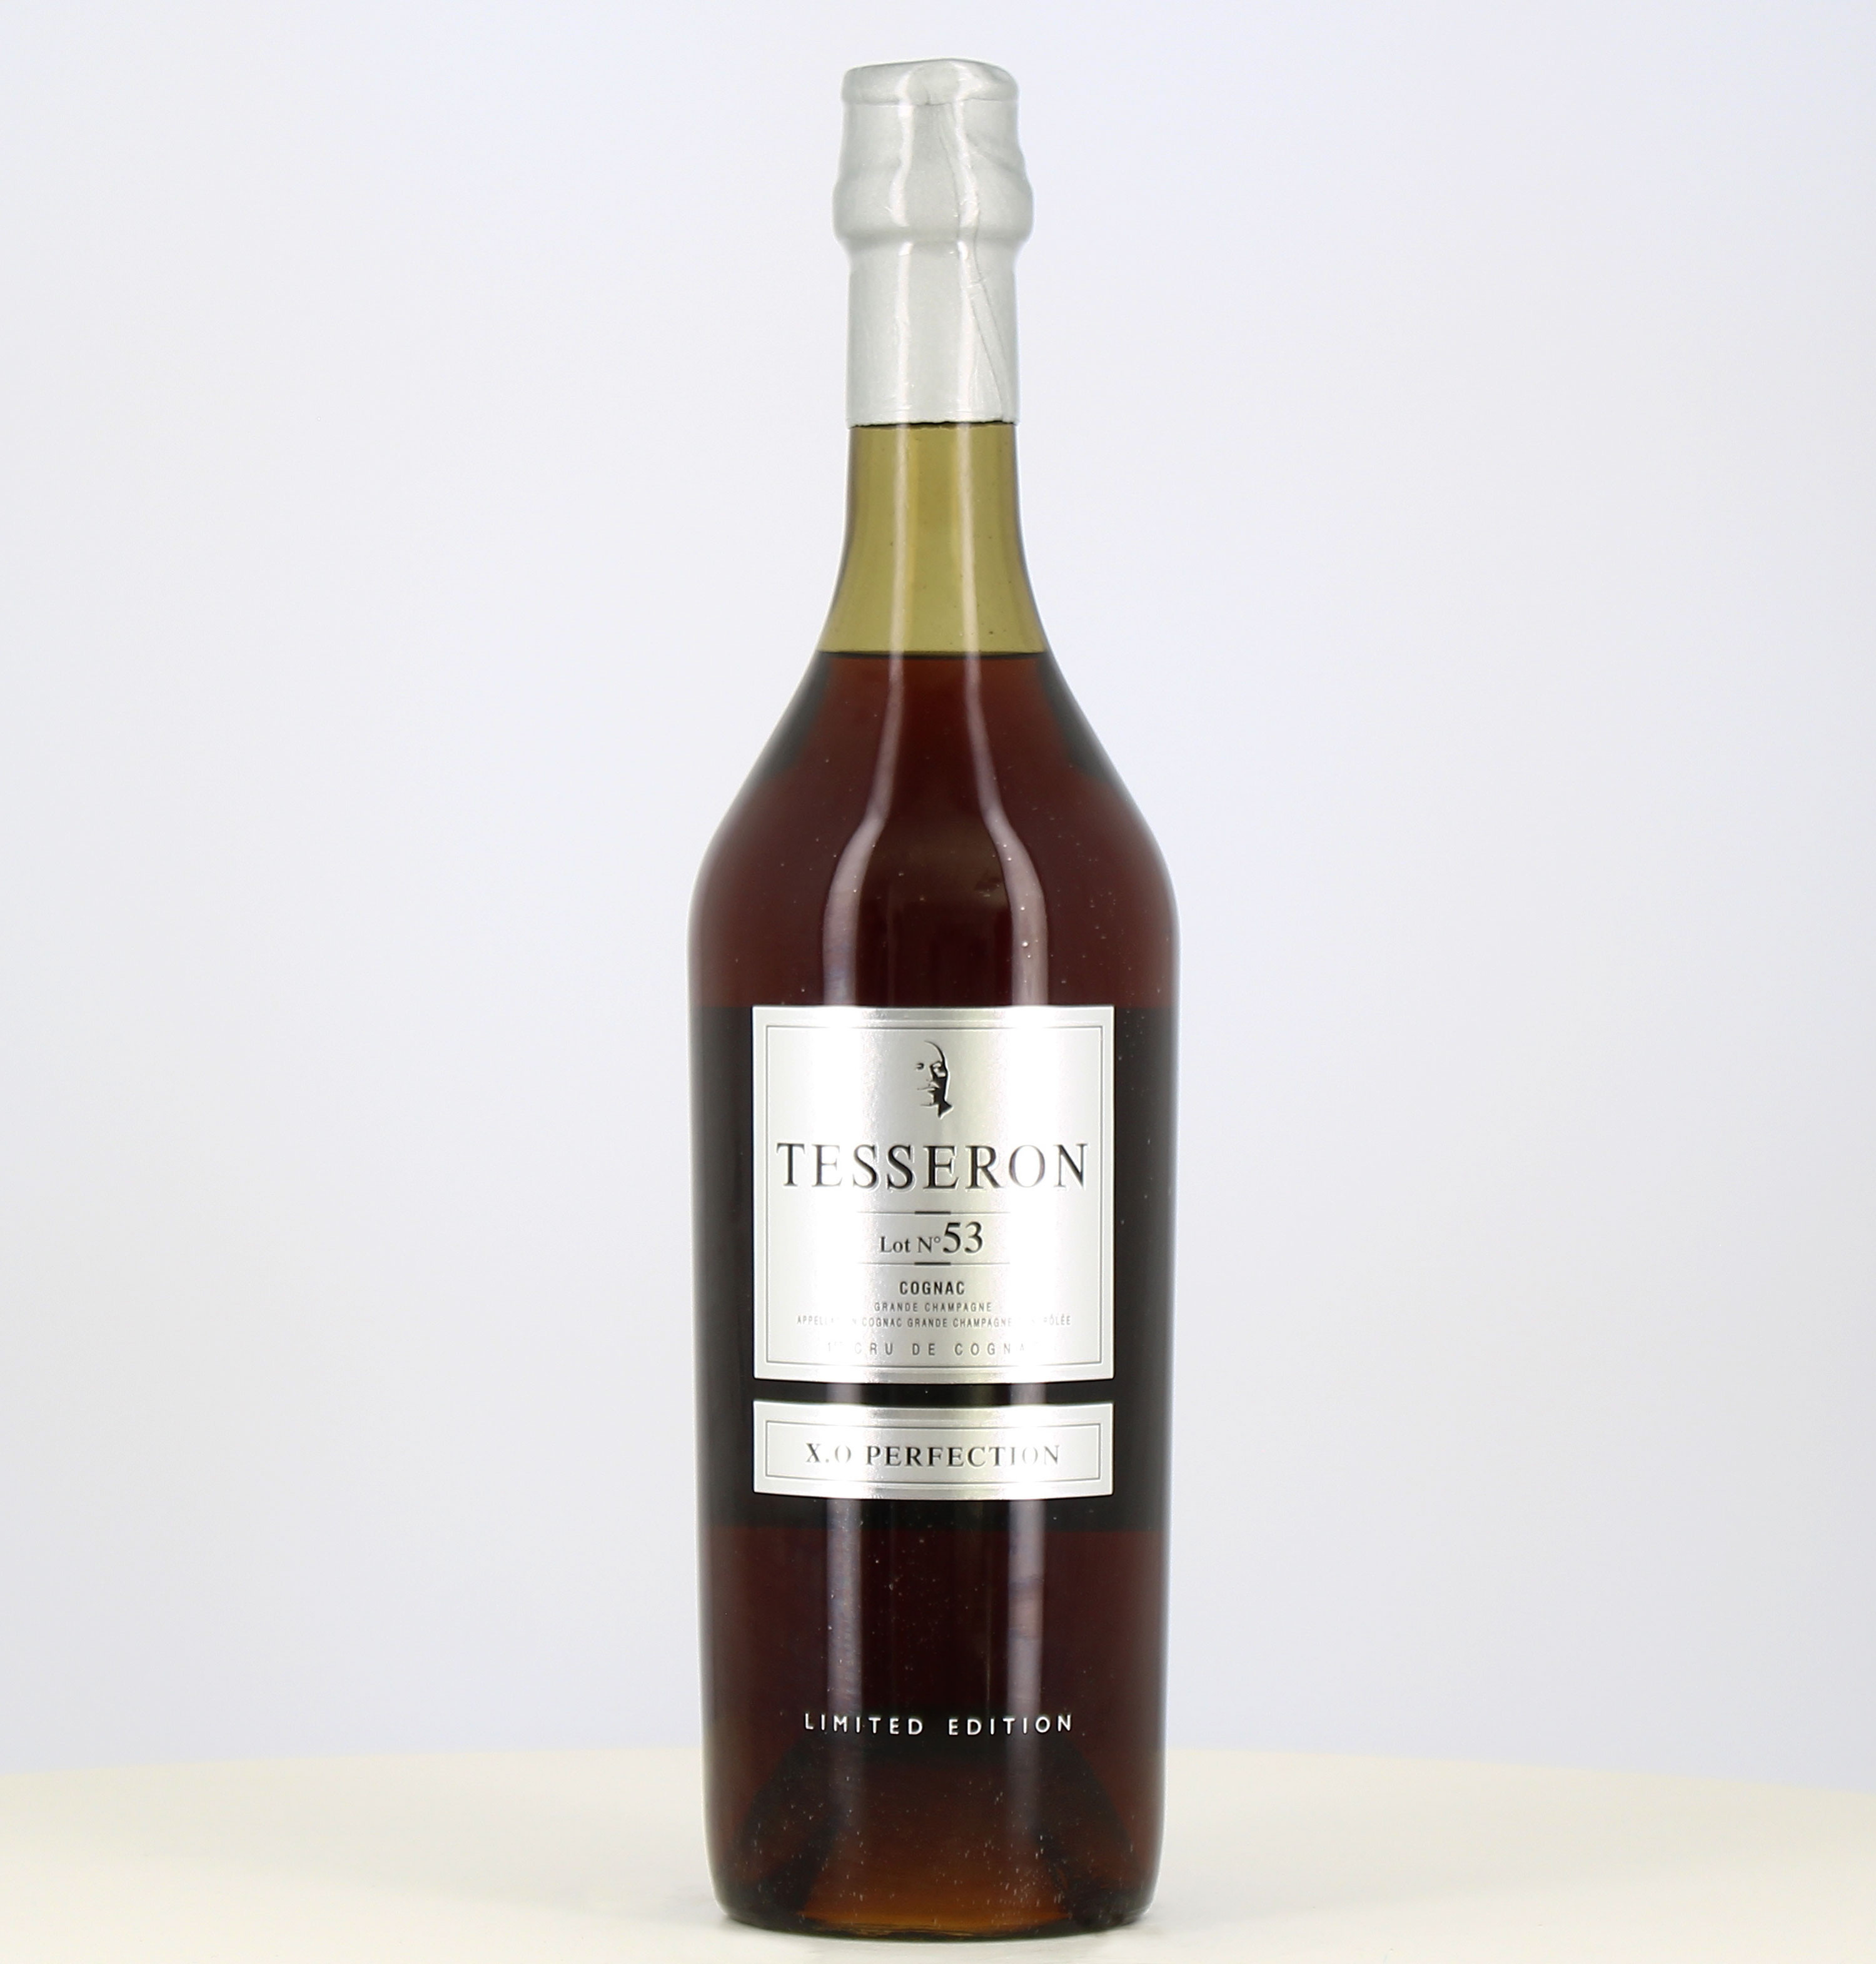 Magnum cognac Tesseron lot n53 1er Cru de cognac X.O Perfection 1.75L

This is a bottle of Magnum cognac Tesseron lot n53 1er Cr 